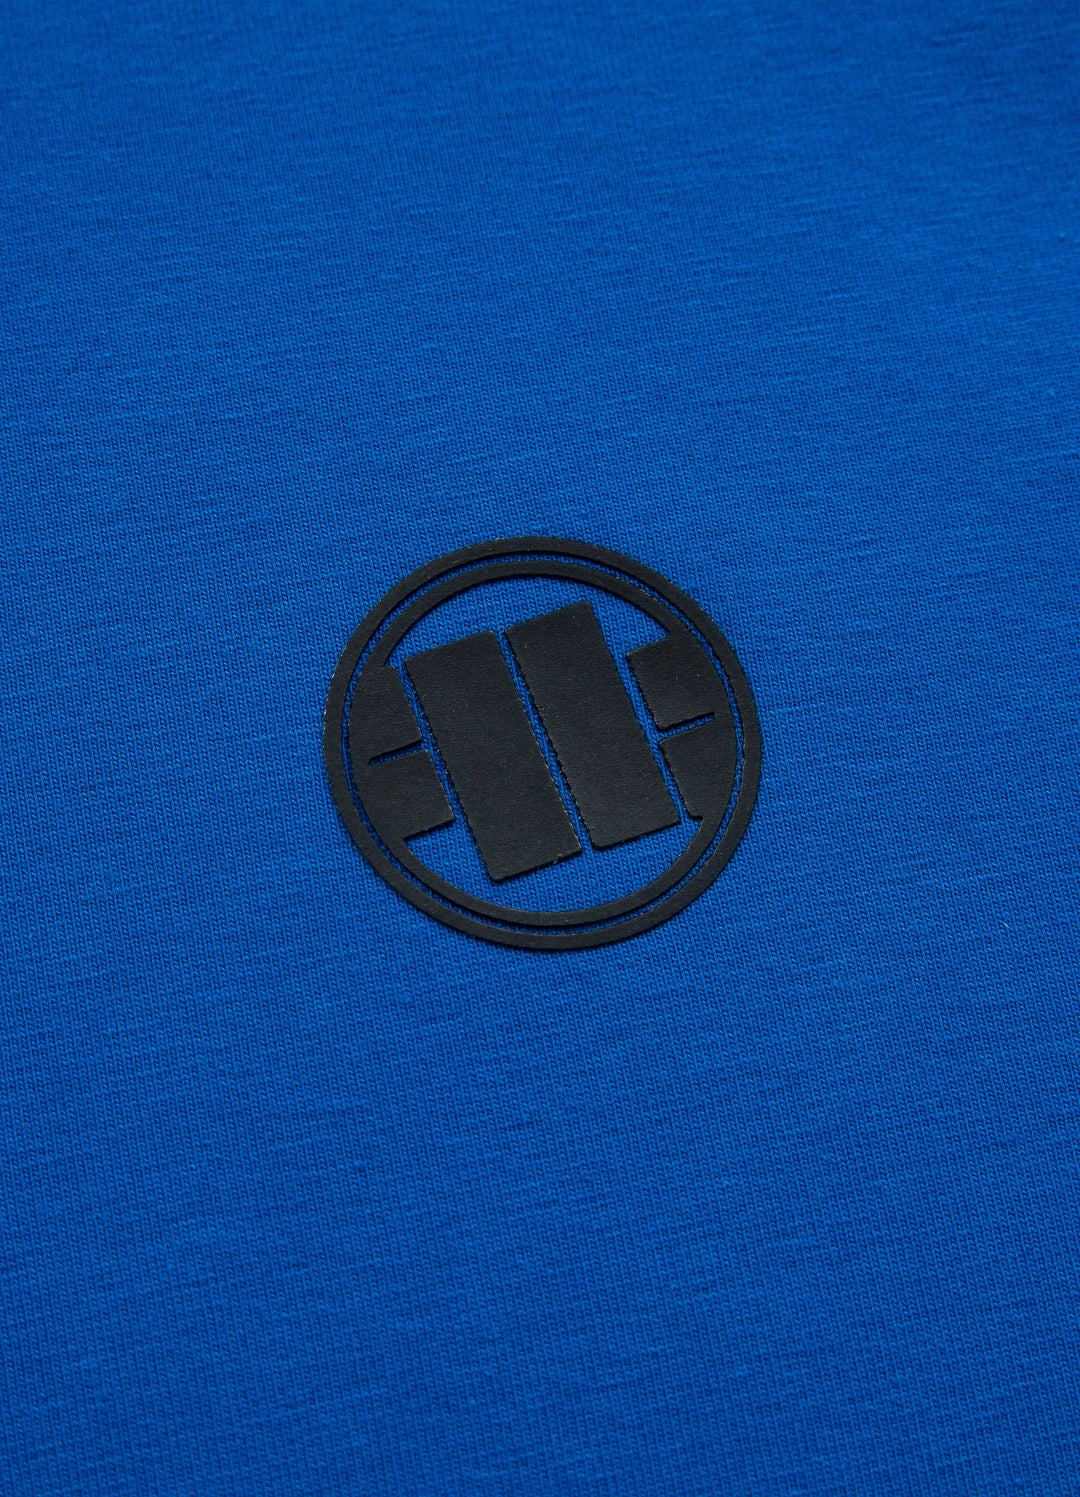 MERCADO Spandex Heavyweight T-shirt Royal Blue.